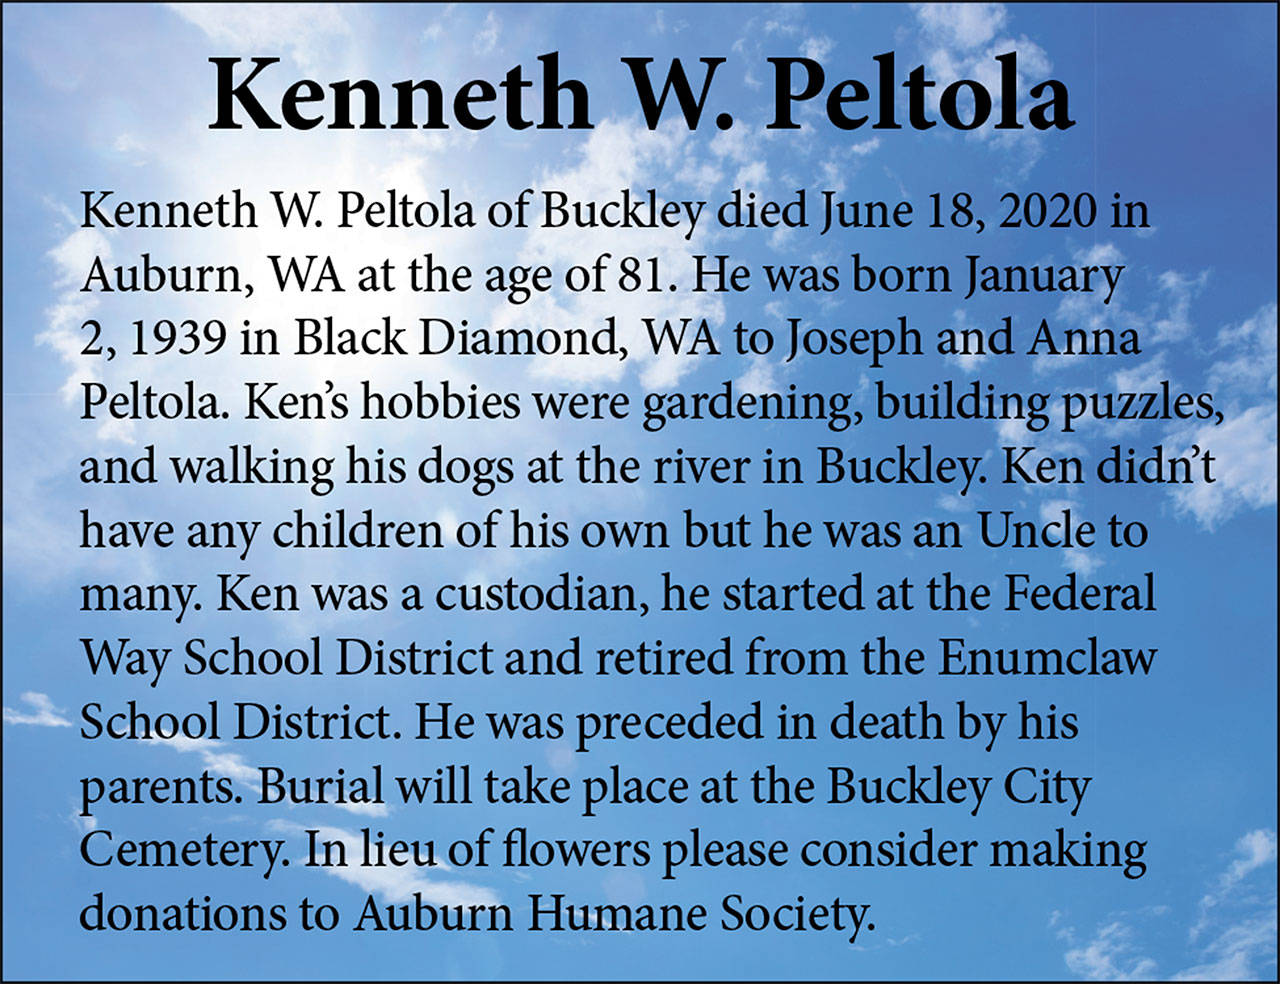 Kenneth Peltola